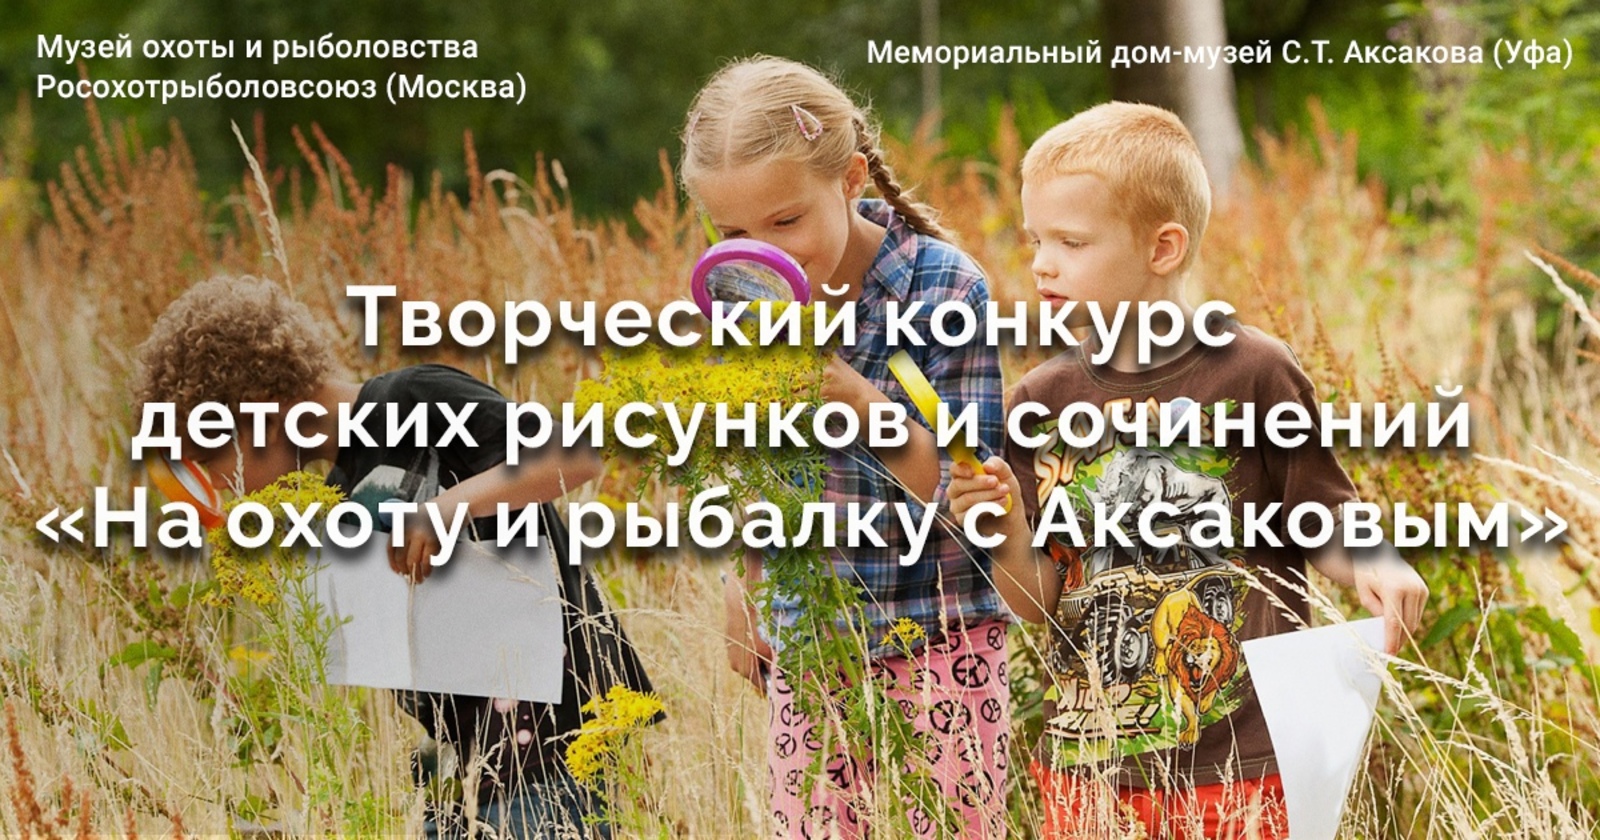 Объявлен детский творческий конкурс «На охоту и рыбалку с Аксаковым!»